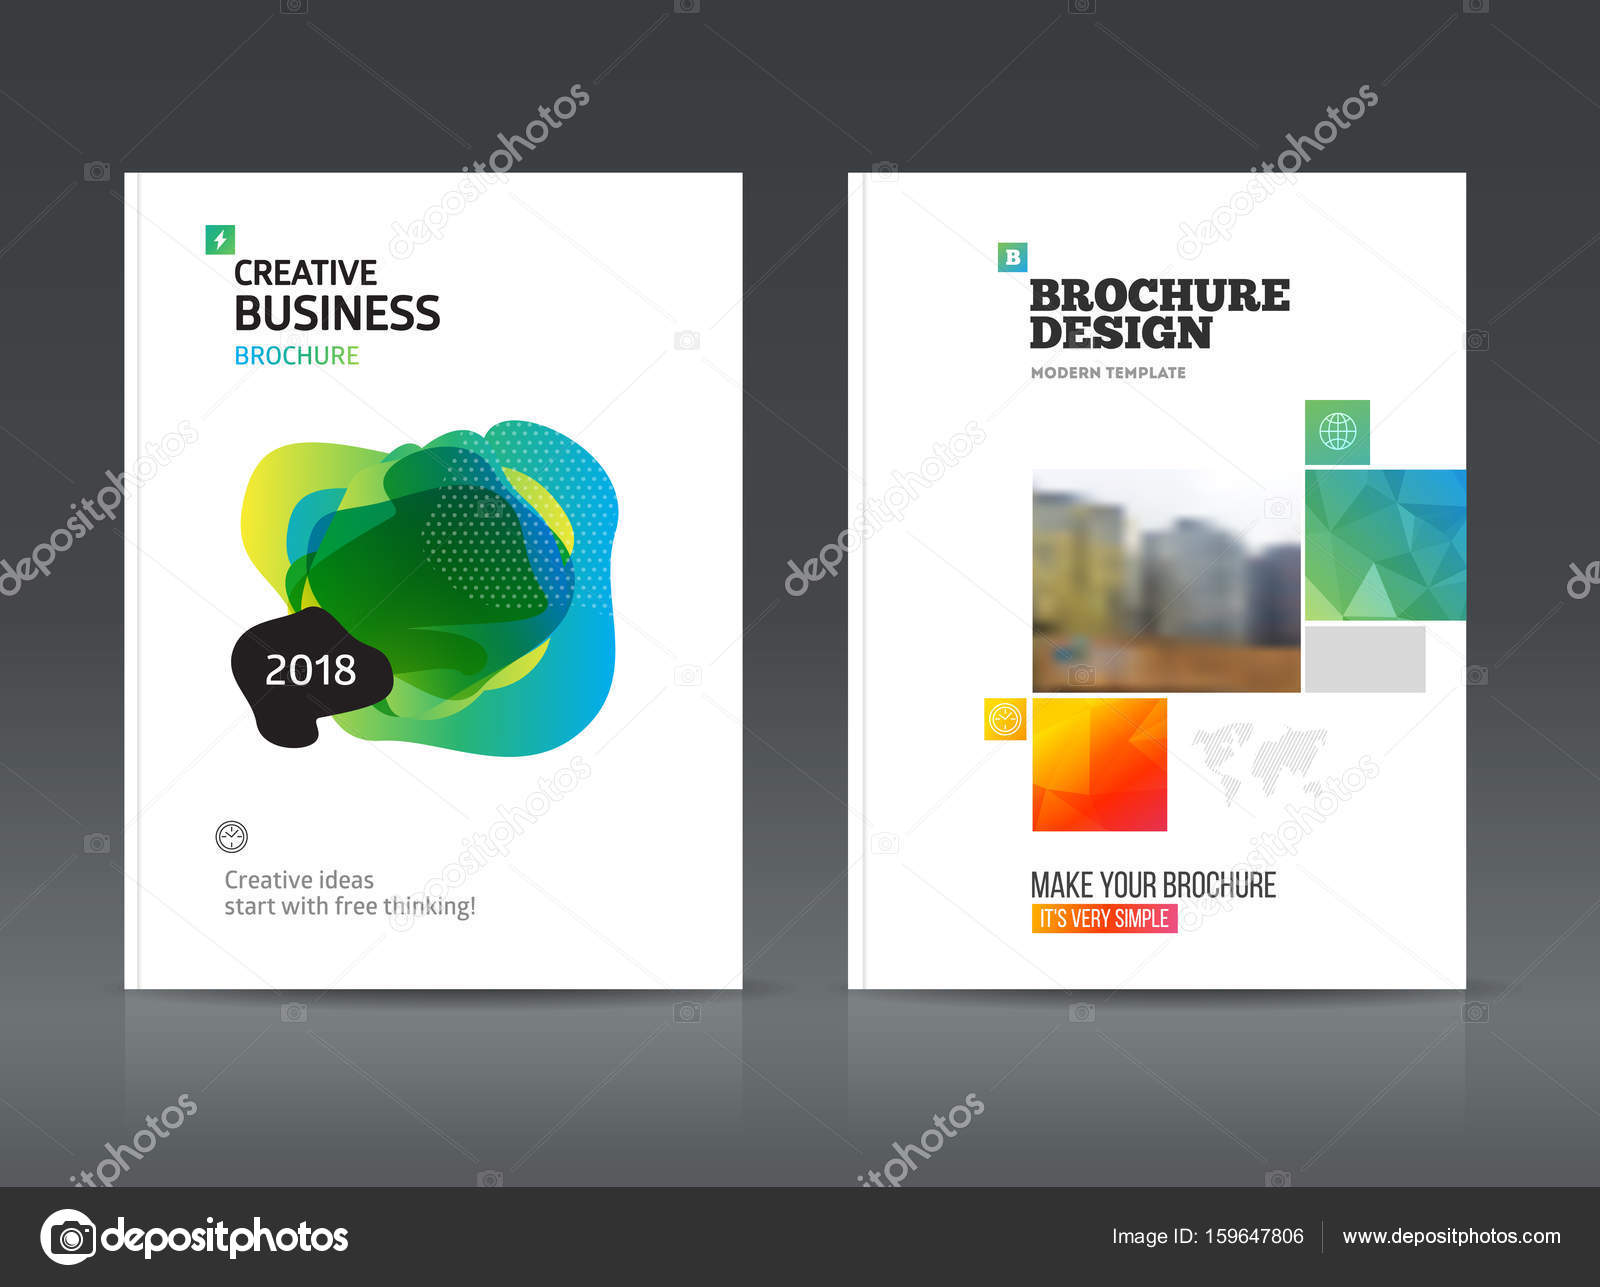 Brochure design online